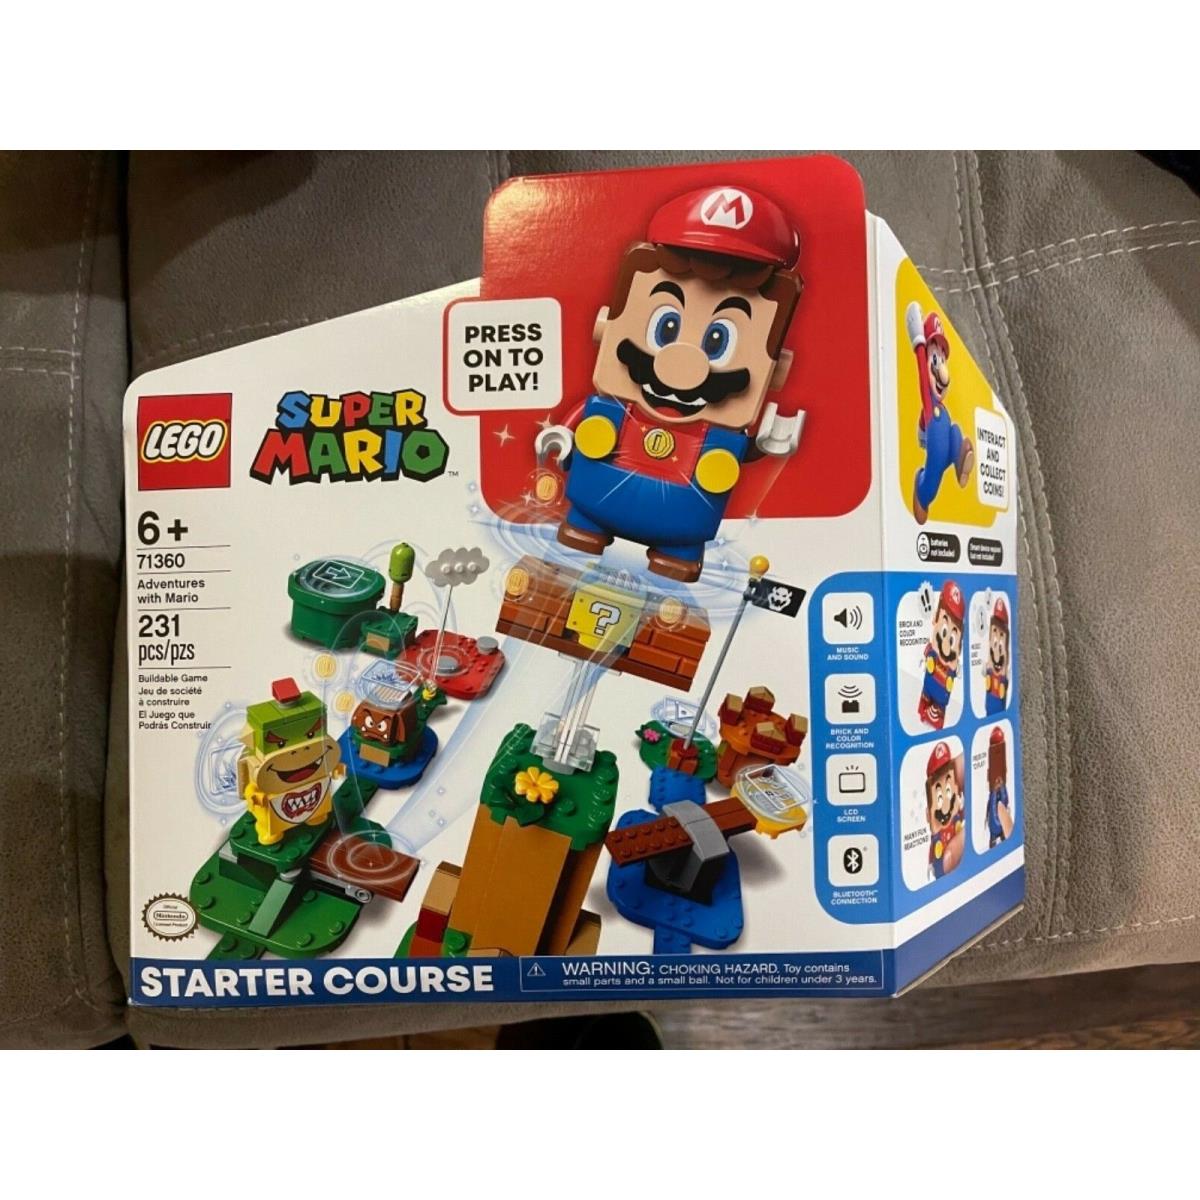 Super Mario Adventures Lego 71360 Starter Course 231 Pieces